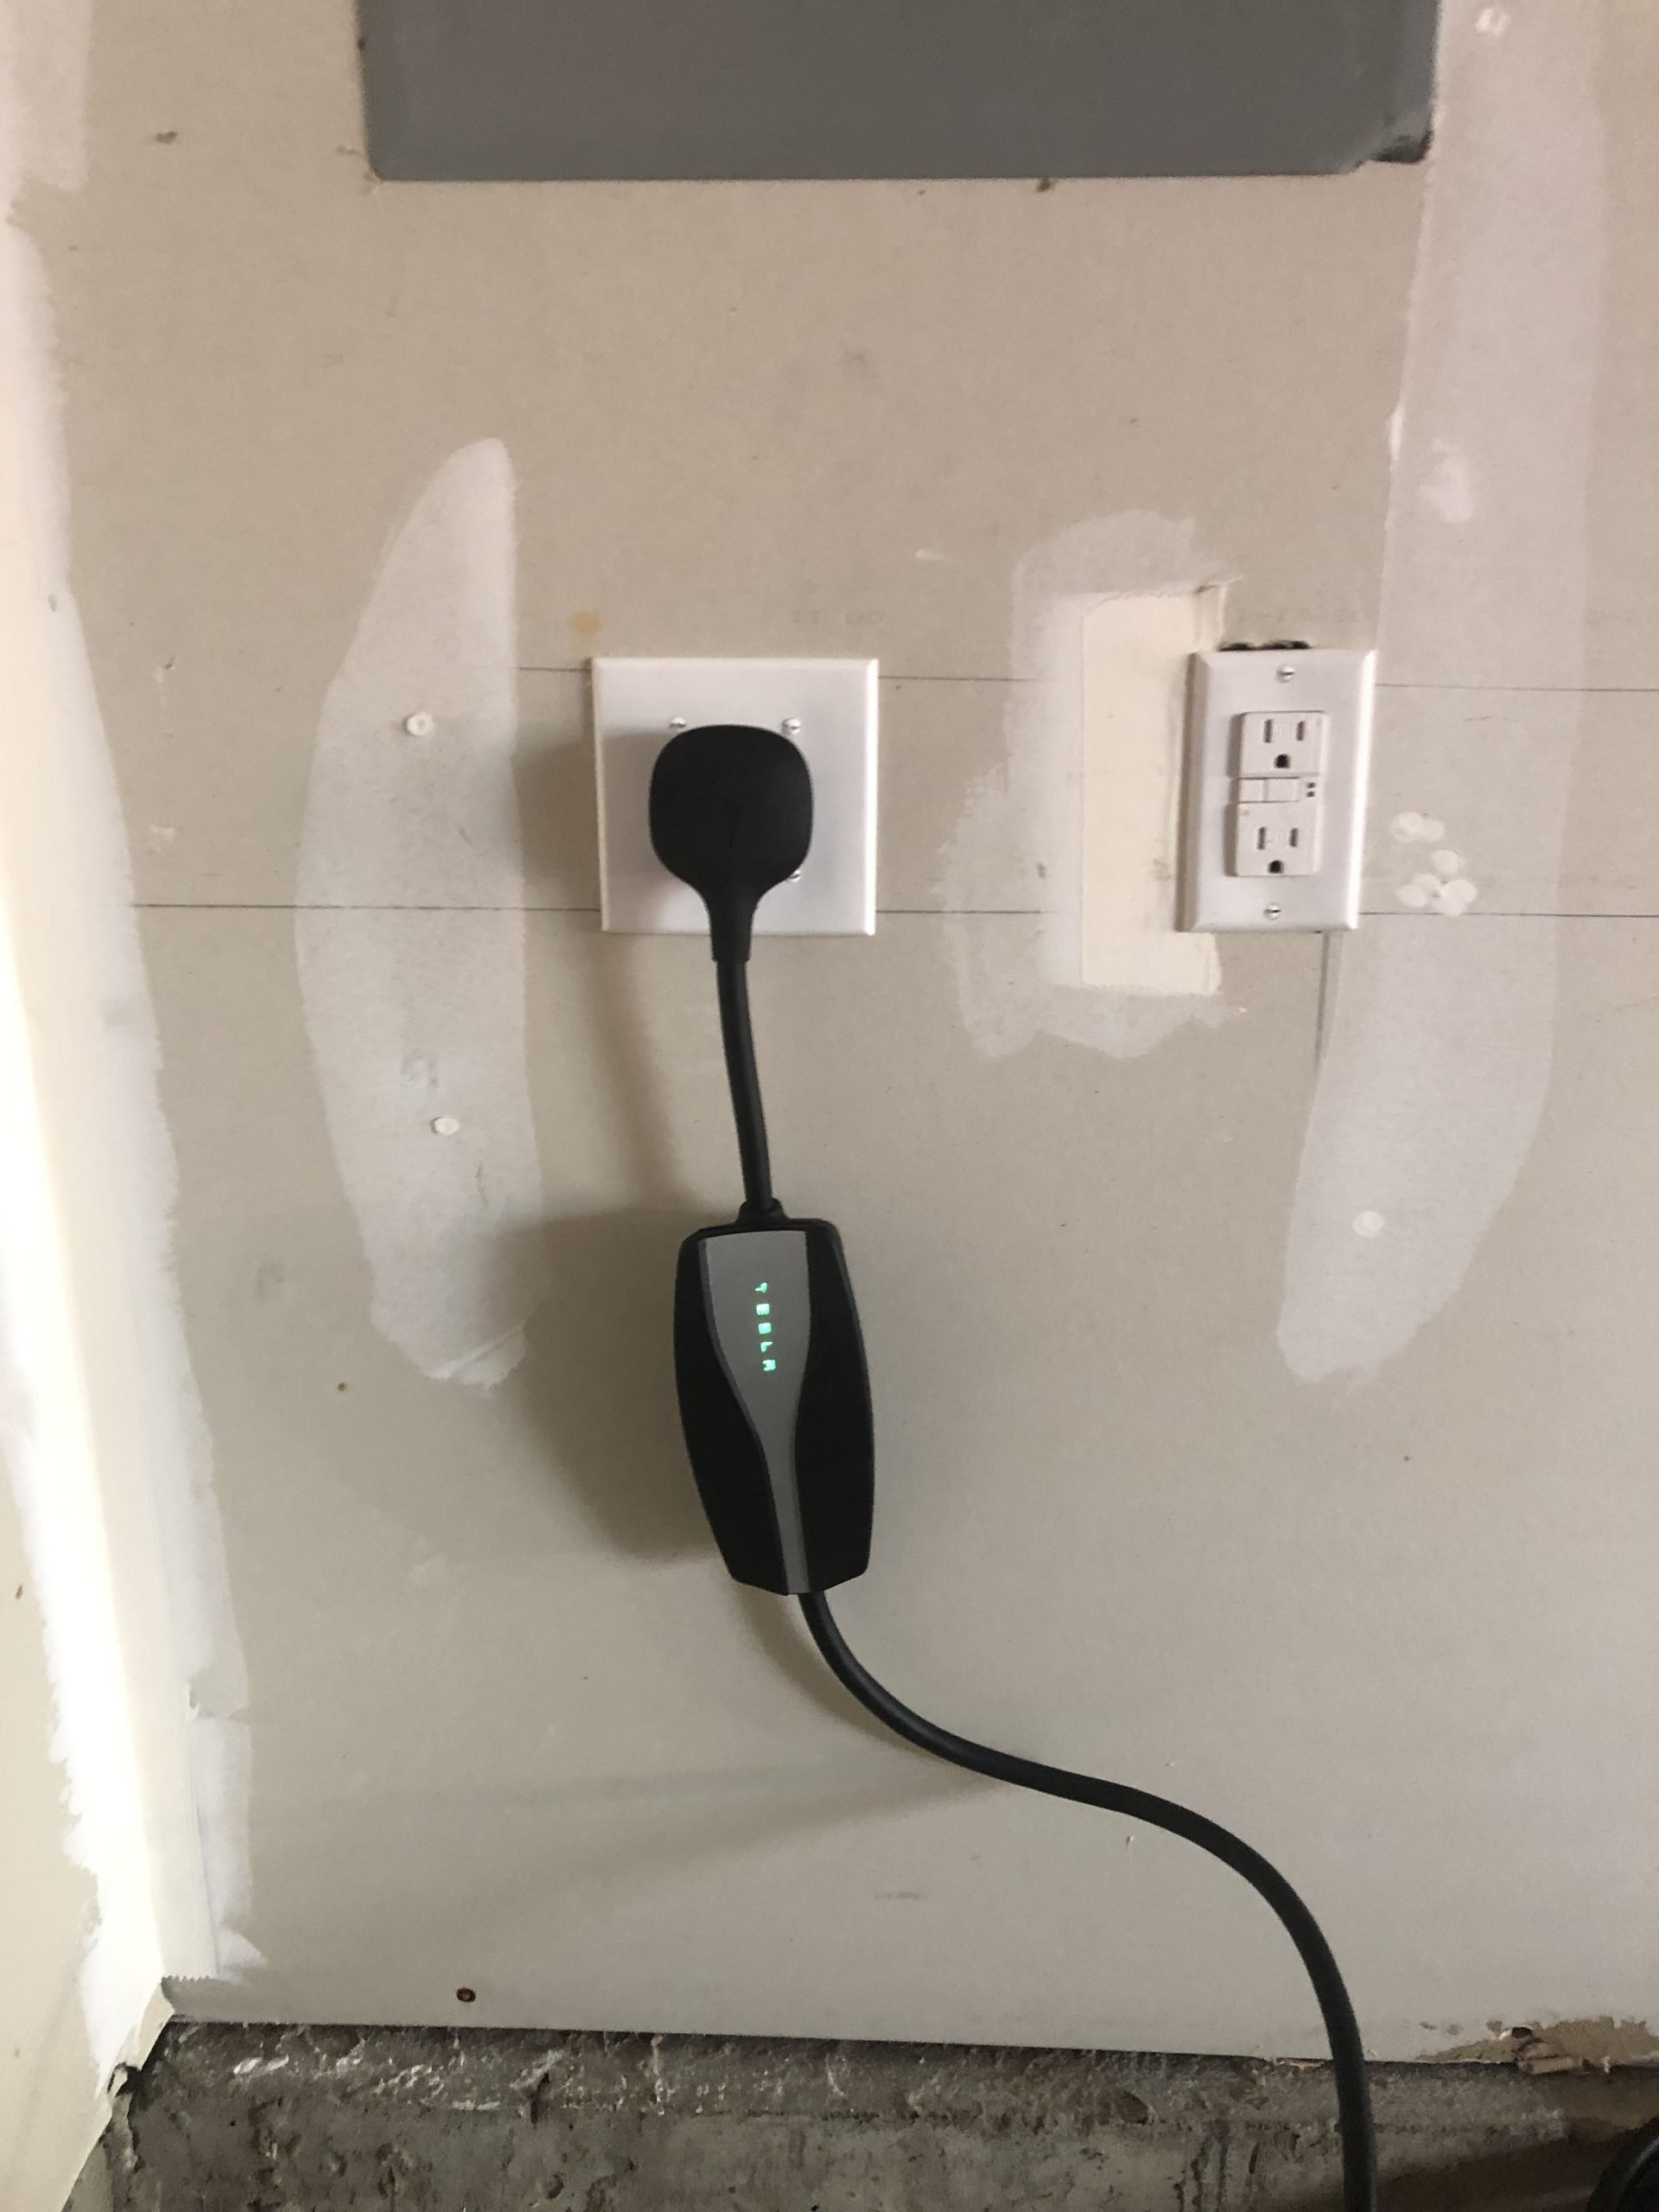 Plug-In EV Charger Installation - NEMA 50r (240v) Receptacle